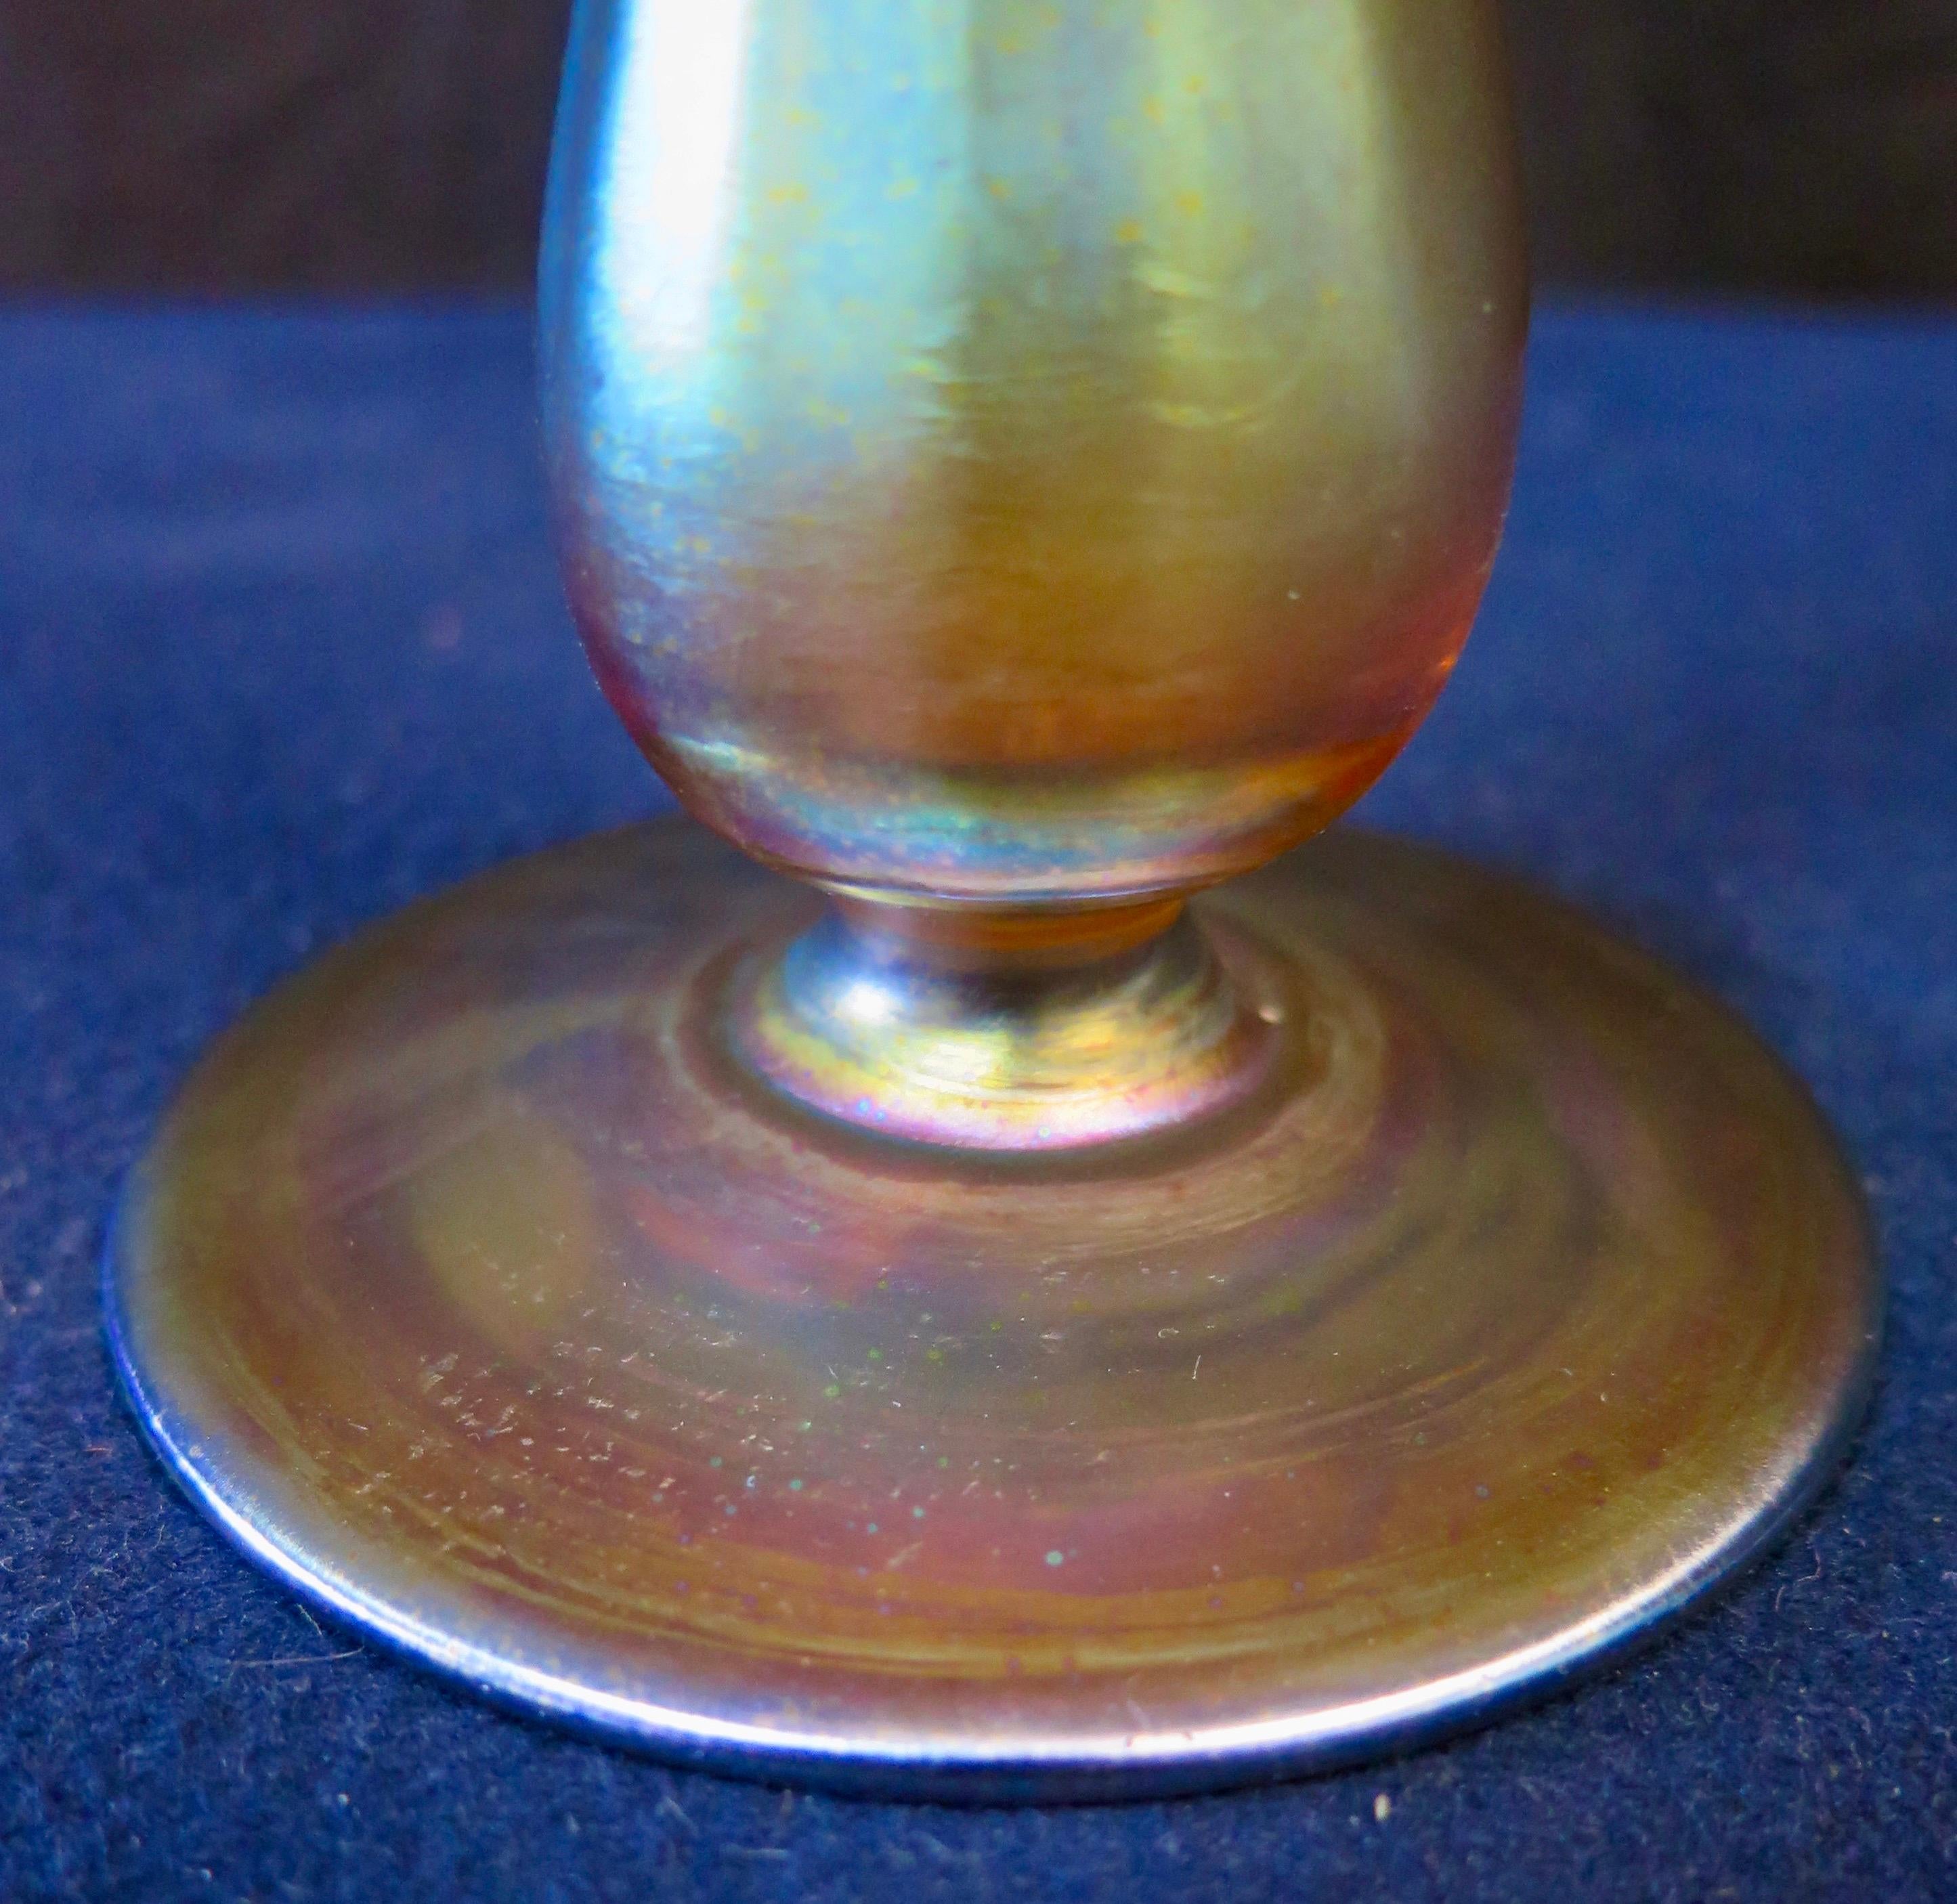 Diese stilvolle und künstlerische Knospenvase der Tiffany Studios, New York, ist wunderschön aus glänzendem irisierendem Favril-Kunstglas gestaltet. Die Vase hat einen stabilen, runden Sockel, aus dem sich ein hoher, schlanker Zylinder erhebt, der